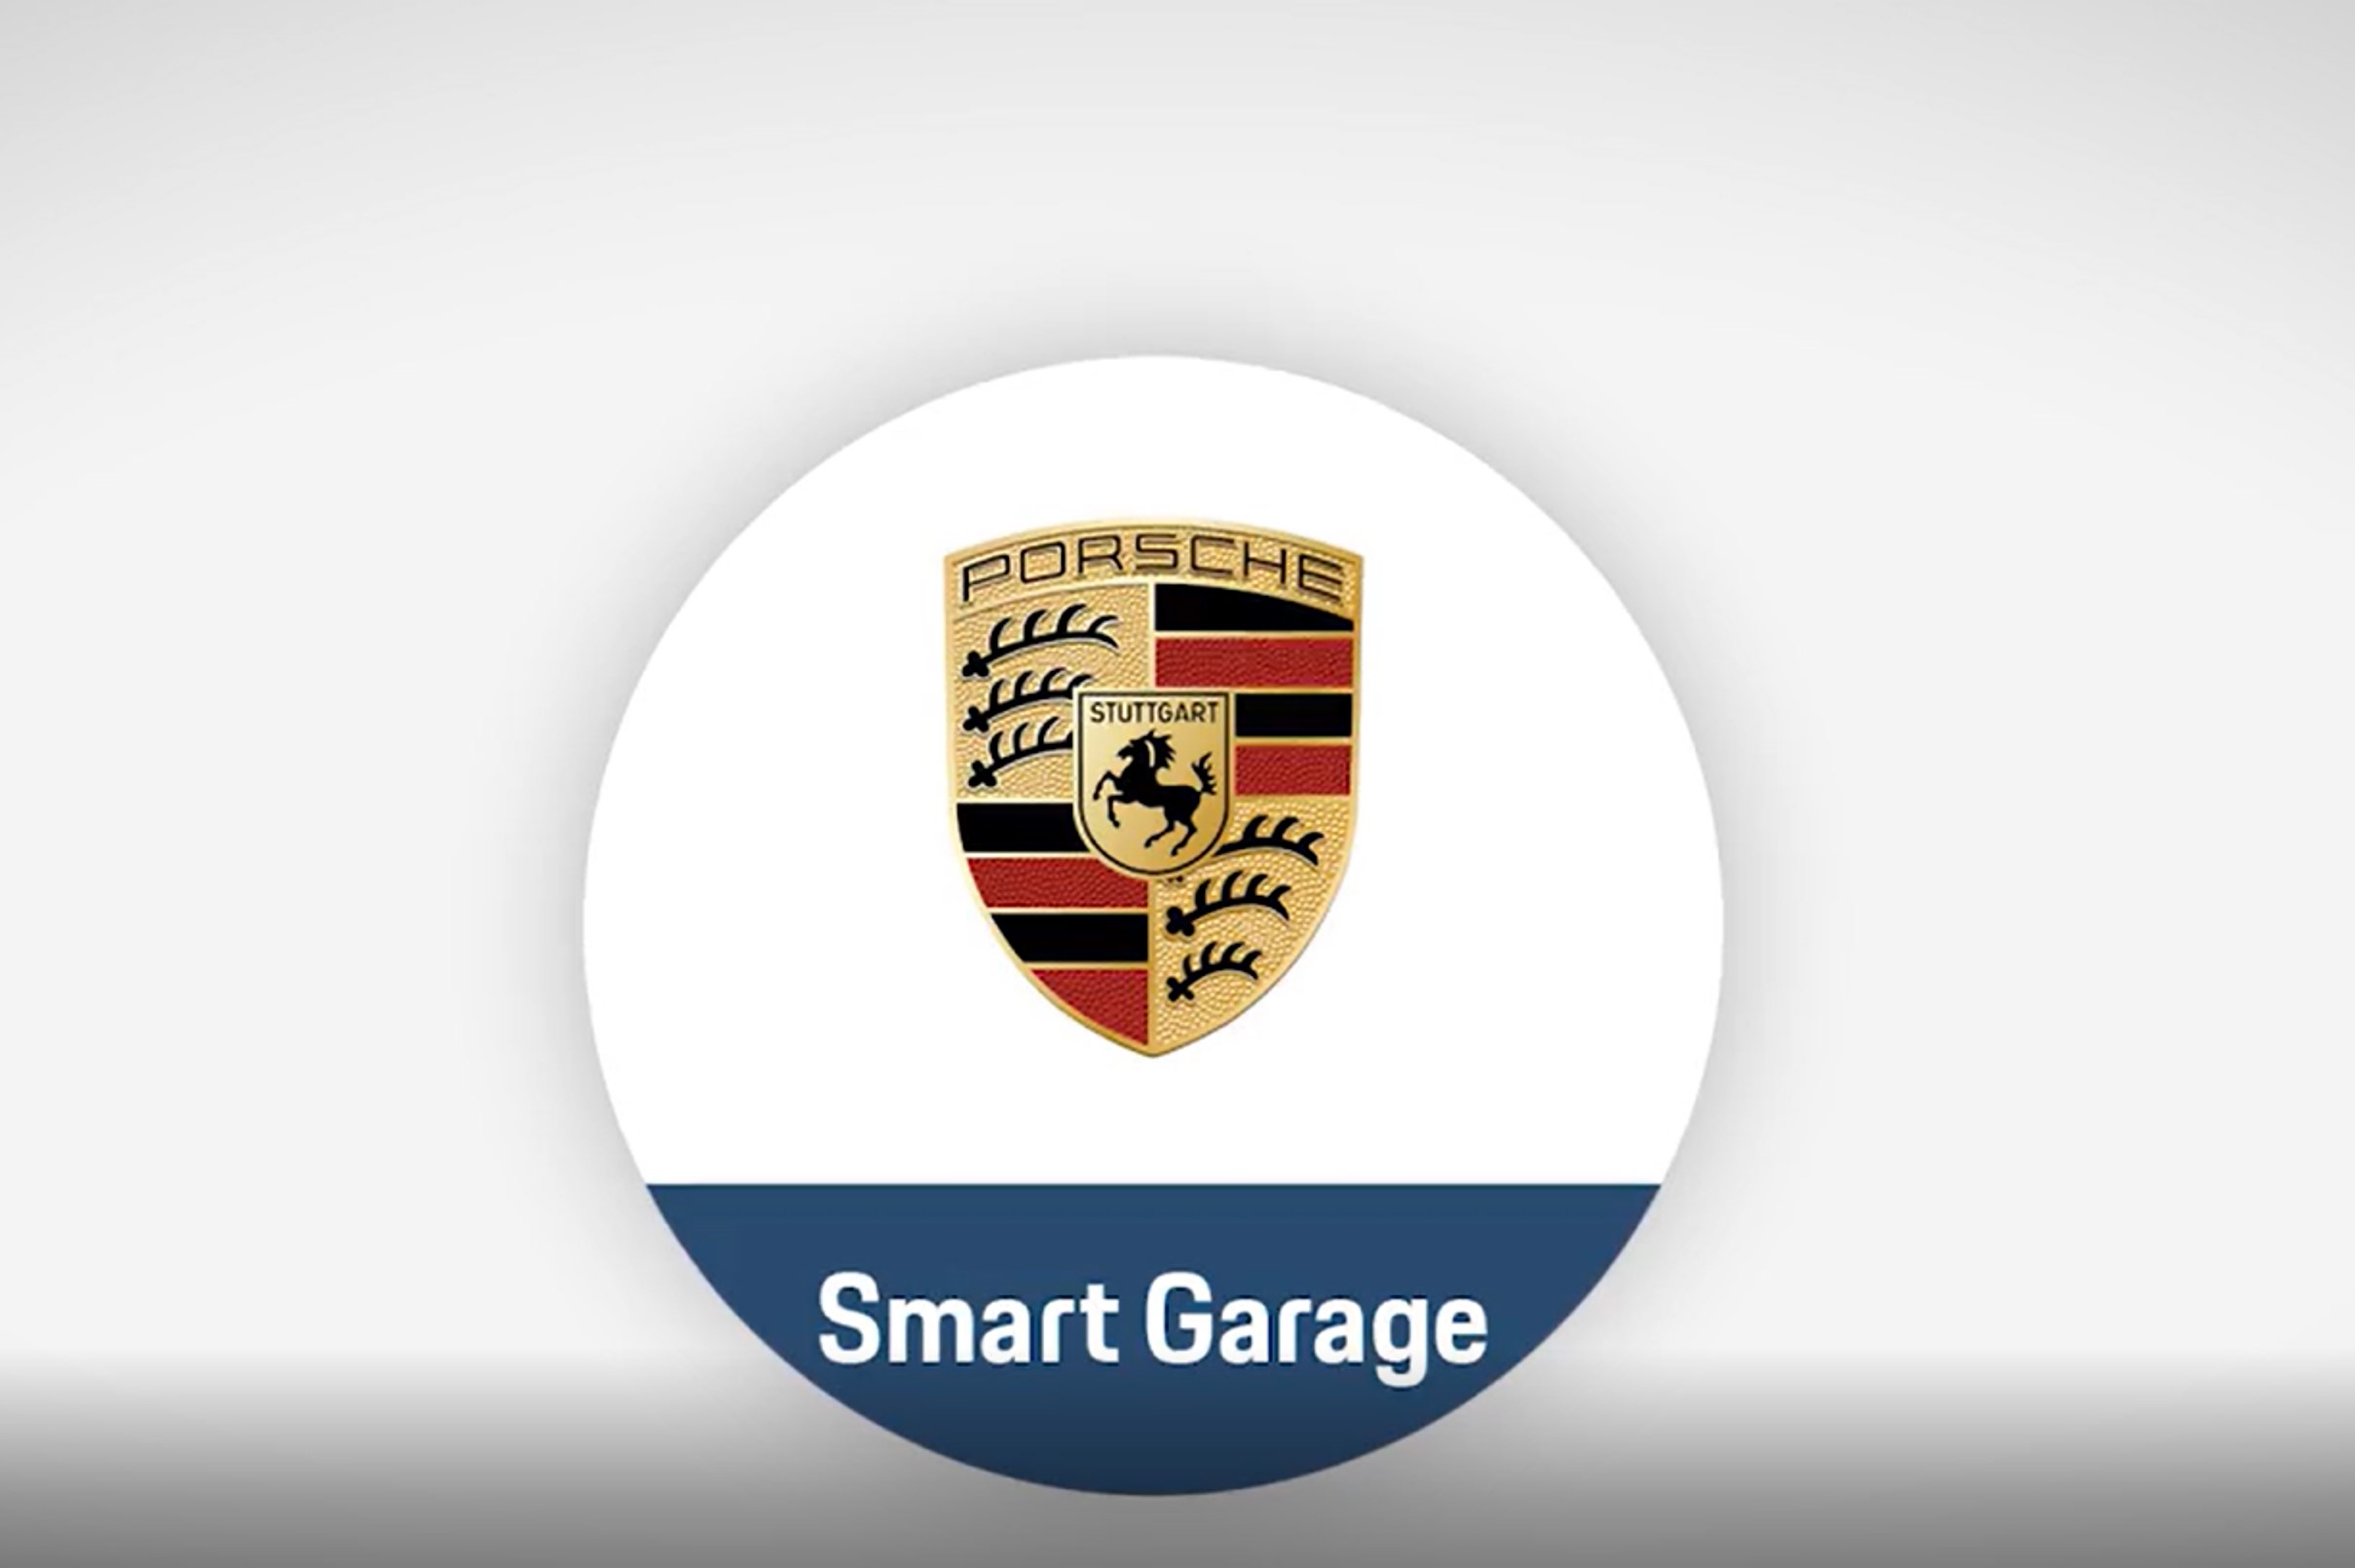 Porsche Smart Garage 保时捷智能车库